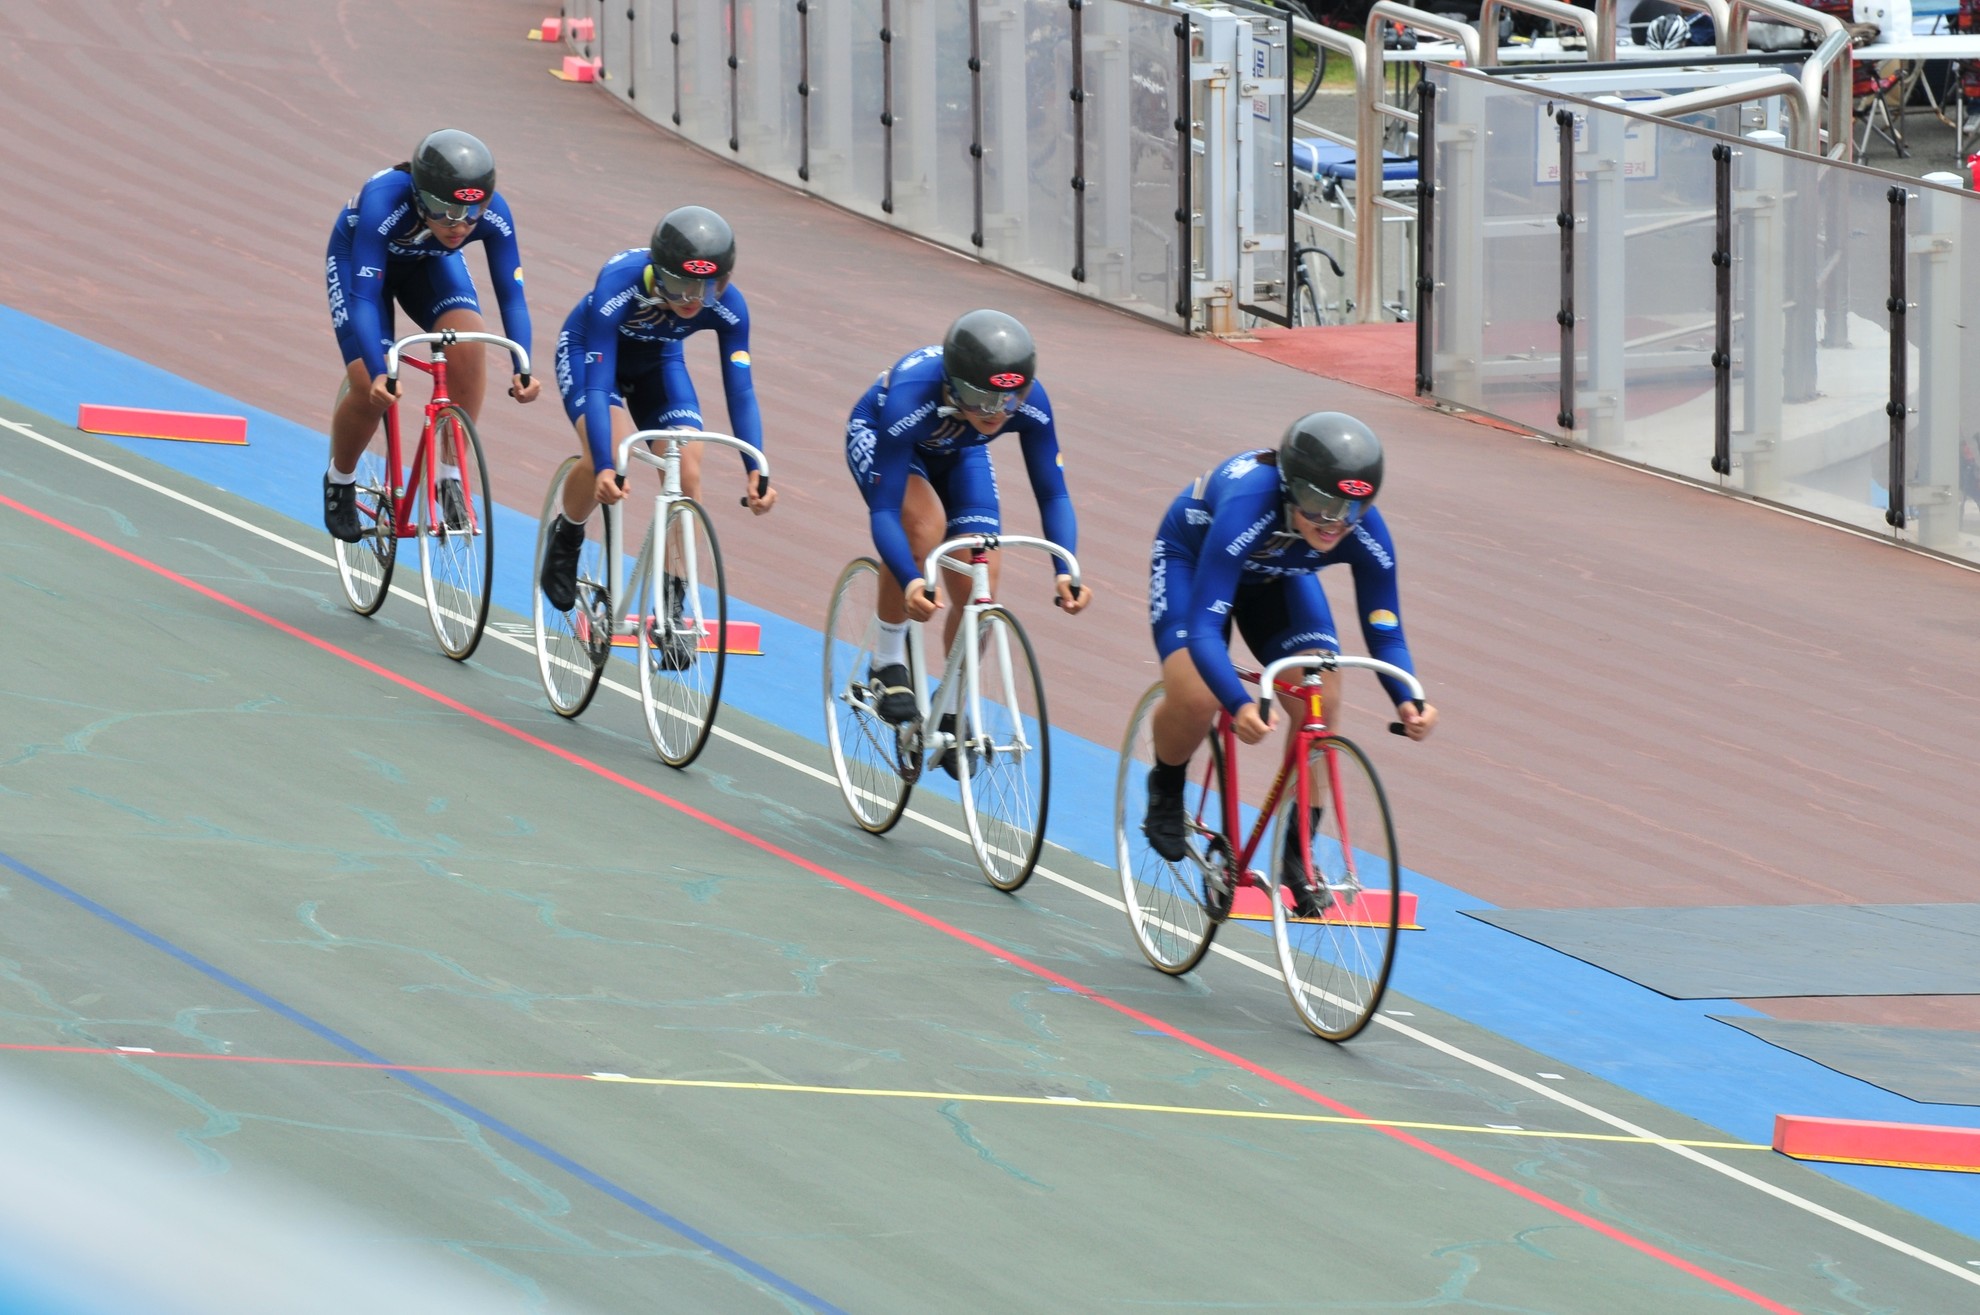 2020 KBS 양양 전국사이클선수권대회에서 빛가람중 자전거부의 힘찬 질주